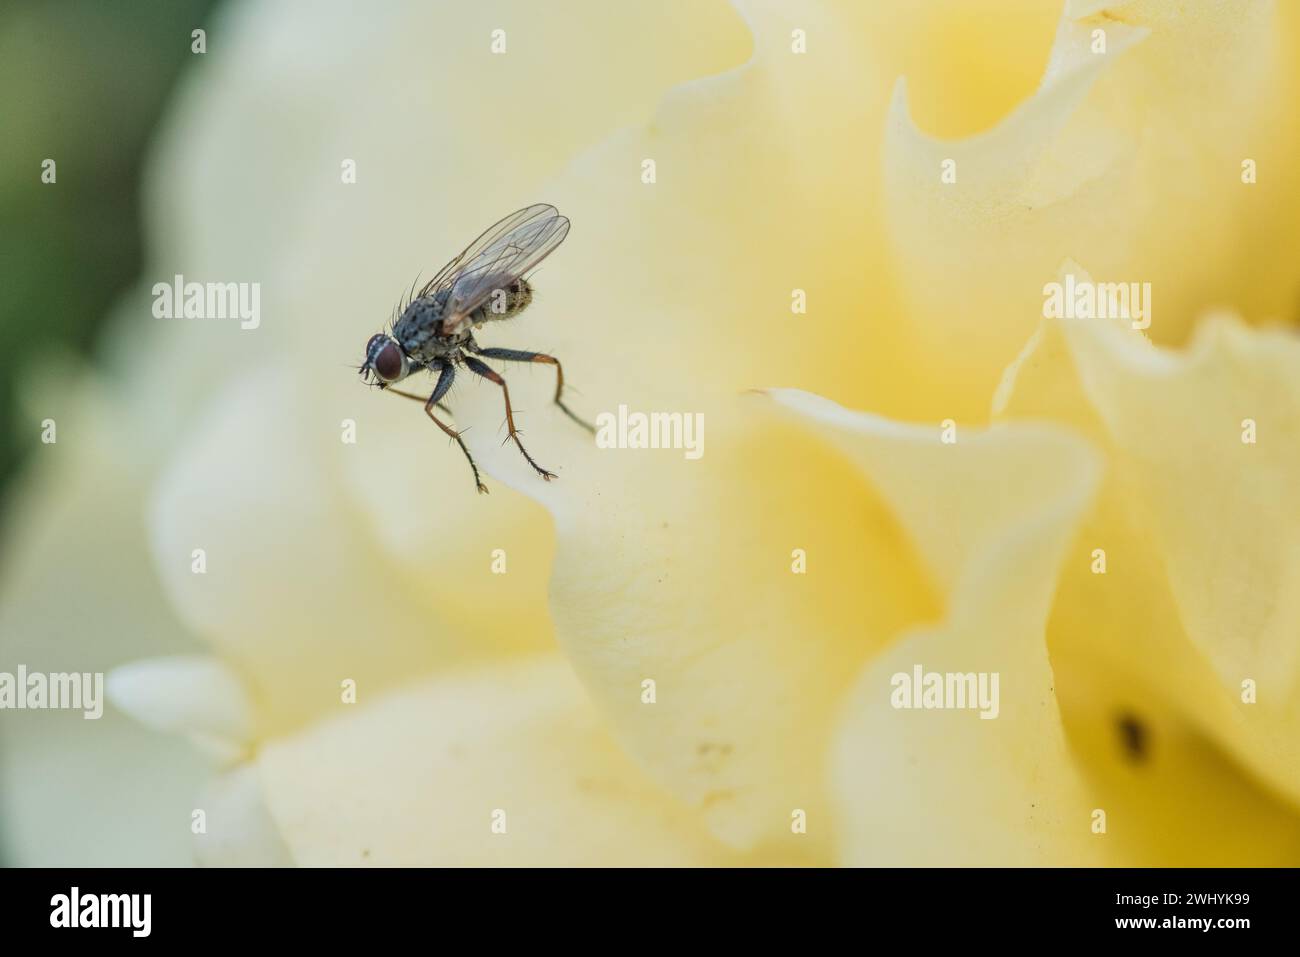 Macro photographie, insecte Coenosia, pétale de rose jaune, gros plan insecte, Détails de la nature, beauté florale Banque D'Images